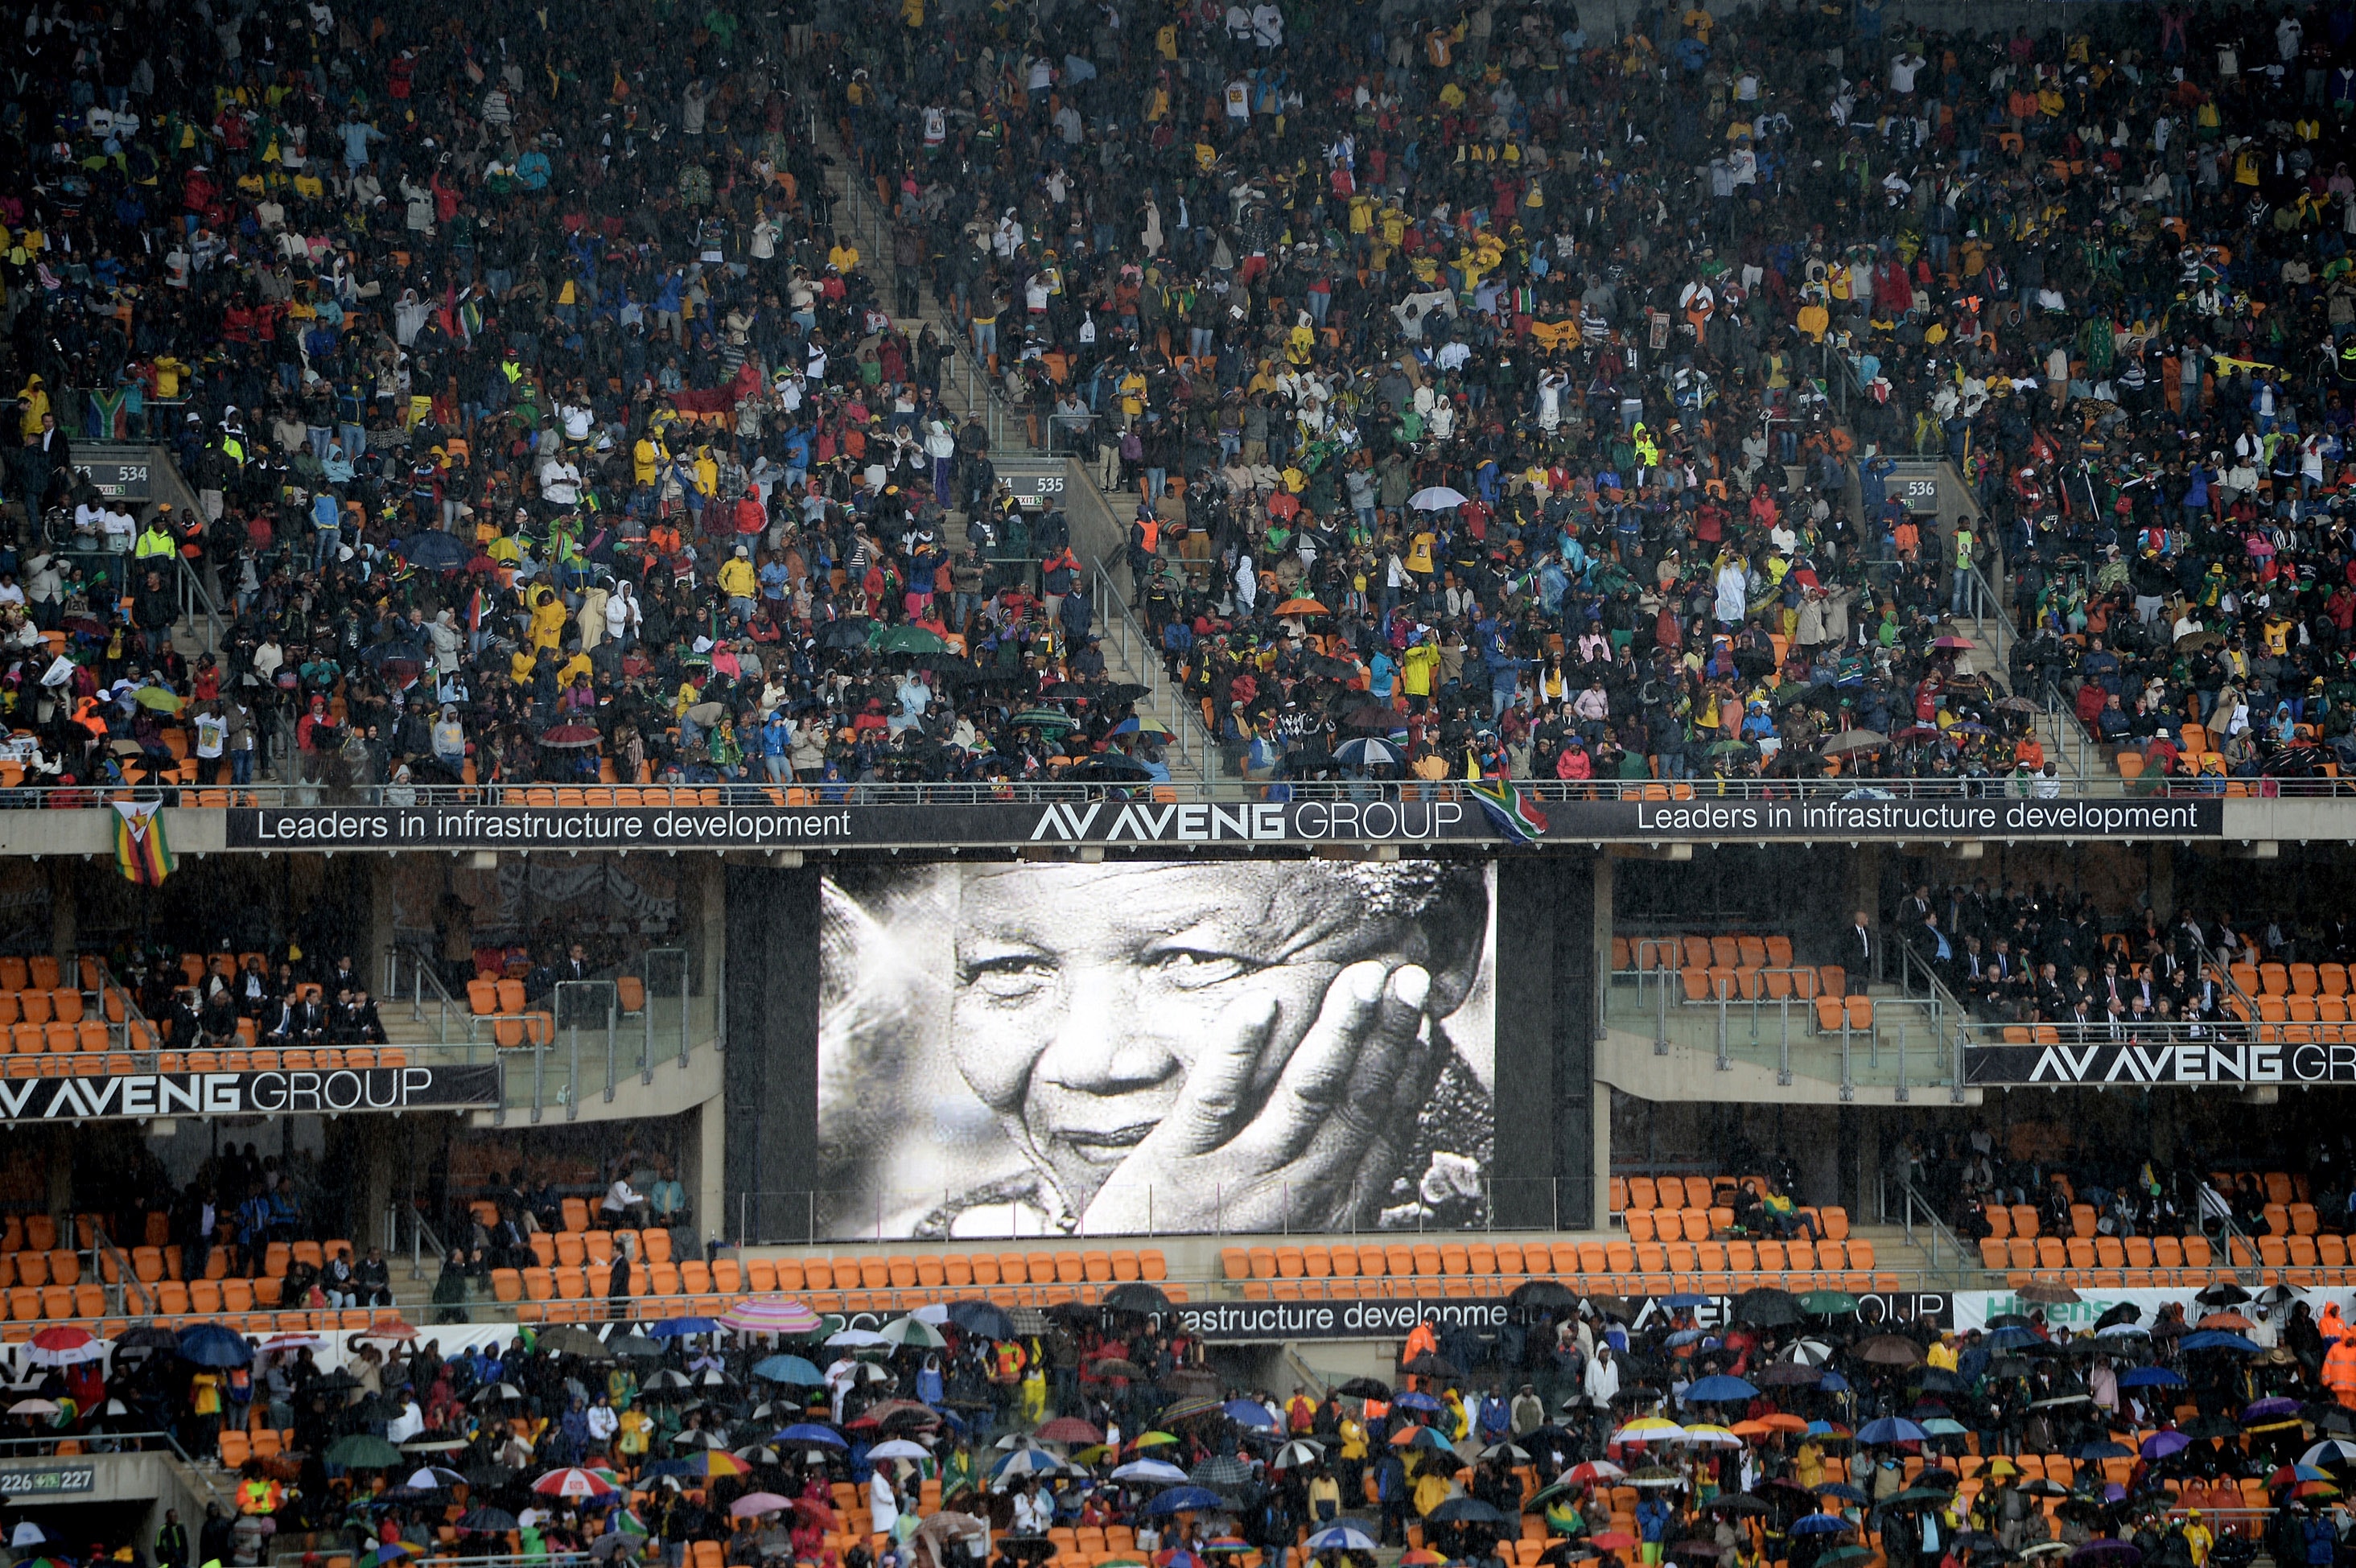 La cerimonia commemorativa di Nelson Mandela il 10 dicembre 2013 a Johannesburg. Oltre 60 capi di stato si sono recati in Sud Africa per partecipare a una settimana di eventi per commemorare la vita dell'ex presidente sudafricano. Mandela è morto la sera del 5 dicembre 2013 nella sua casa di Houghton all'età di 95 anni